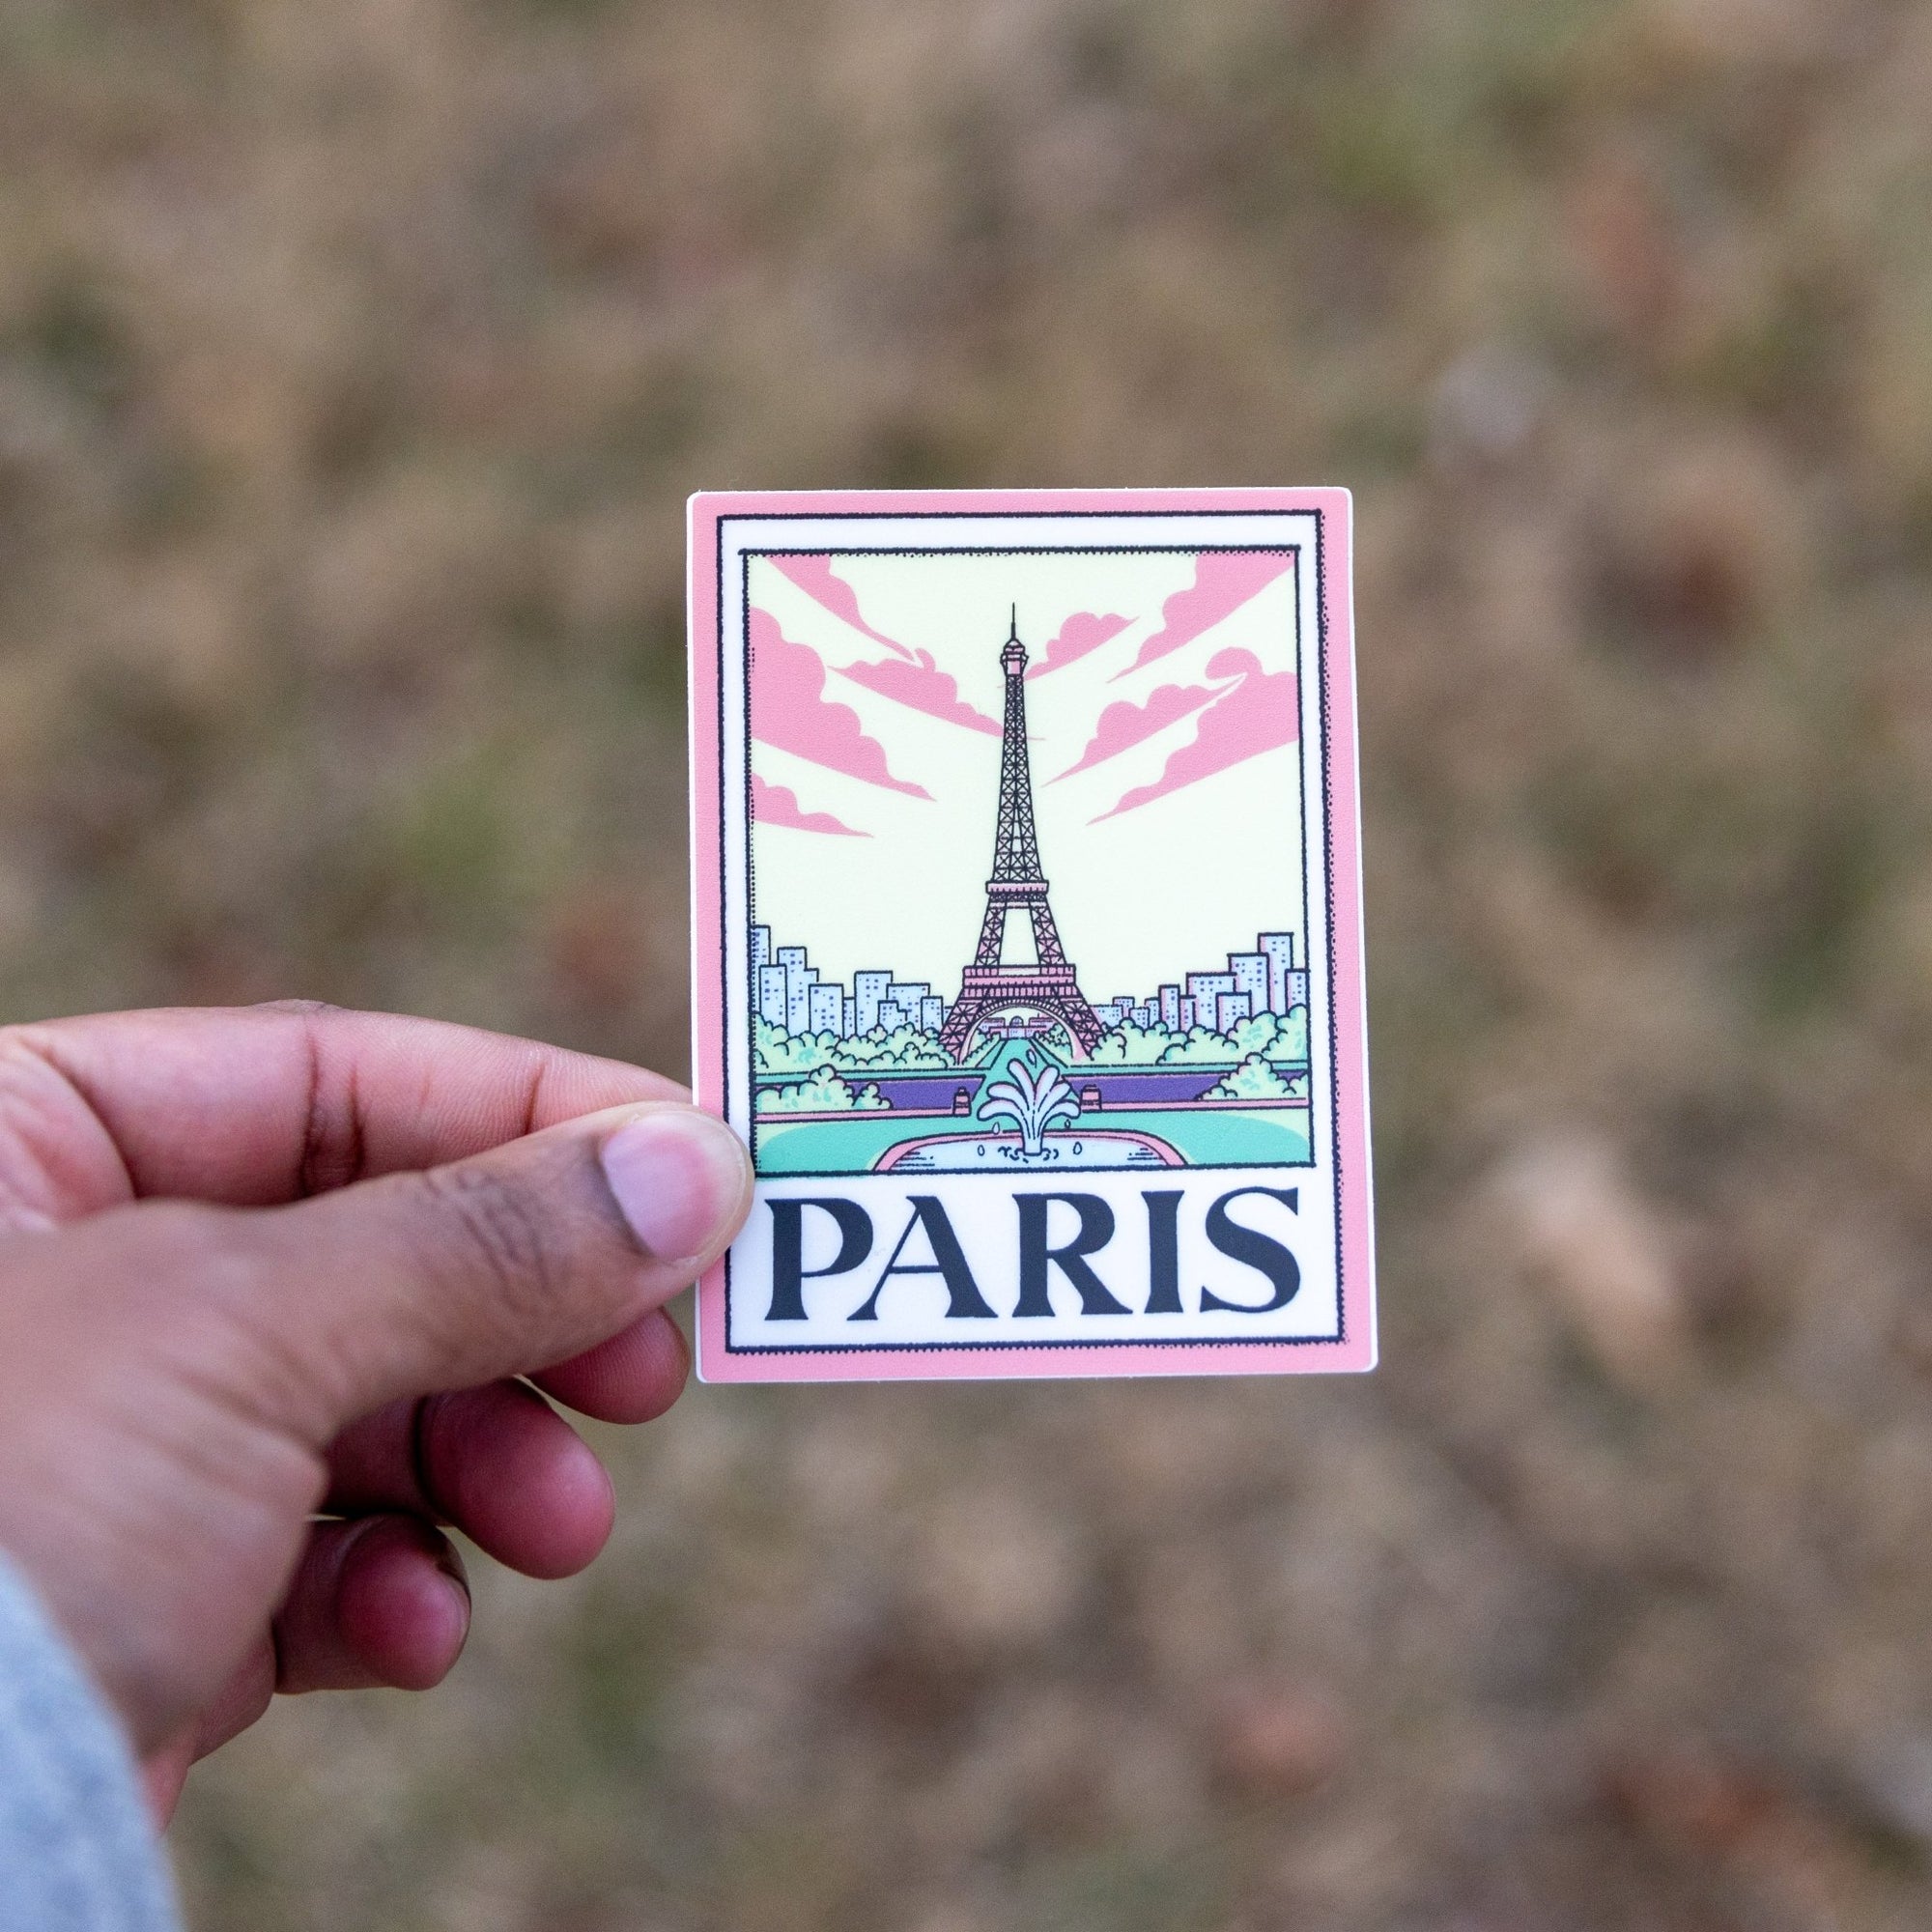 A Paris Picture - menottees